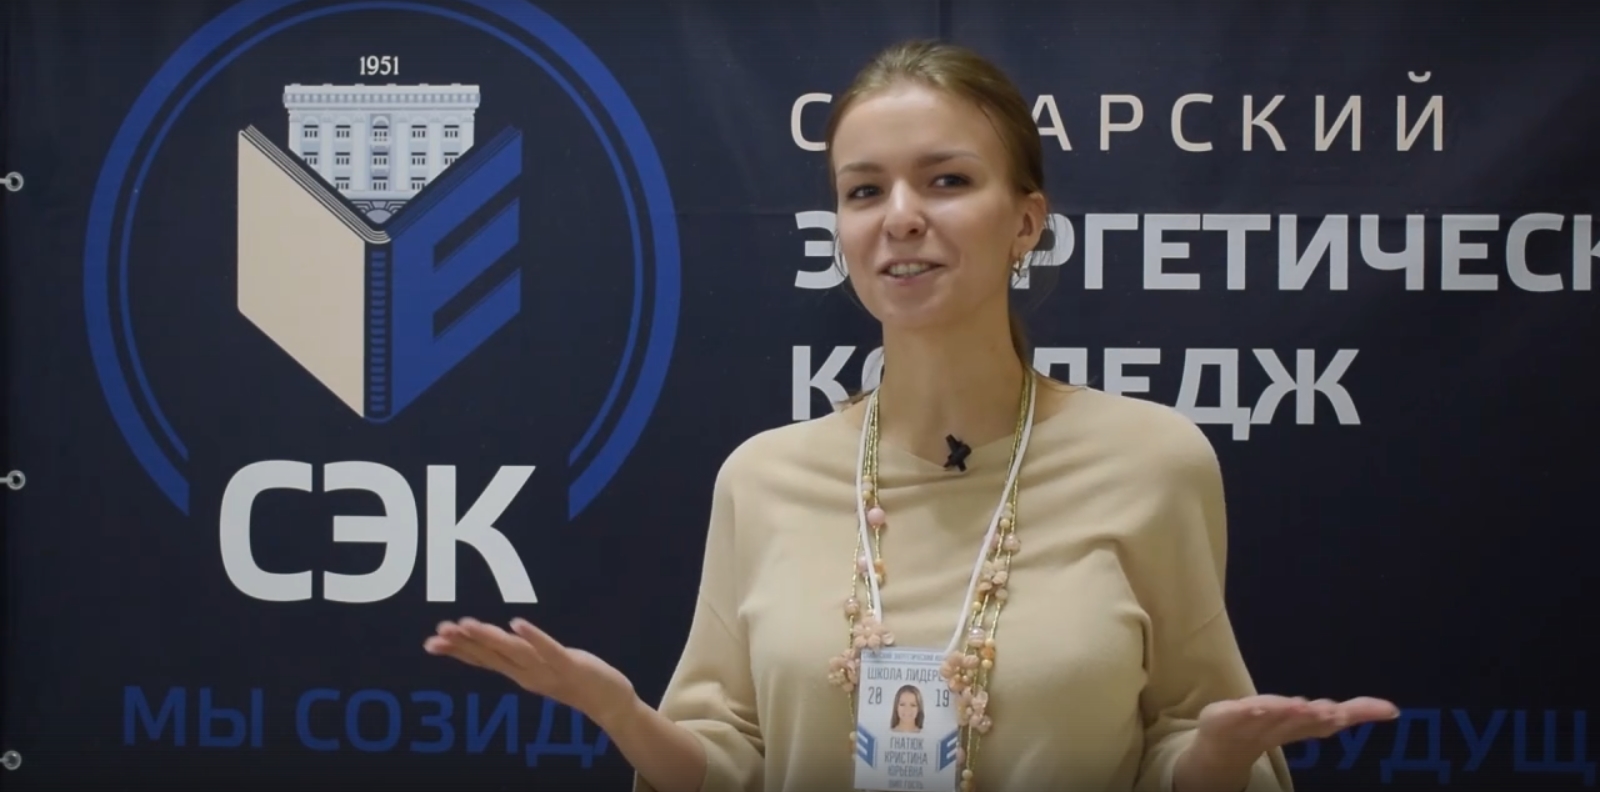 Перейти по ссылке для просмотра видео-интервью со Школы Лидера от Кристины Юрьевны Гнатюк